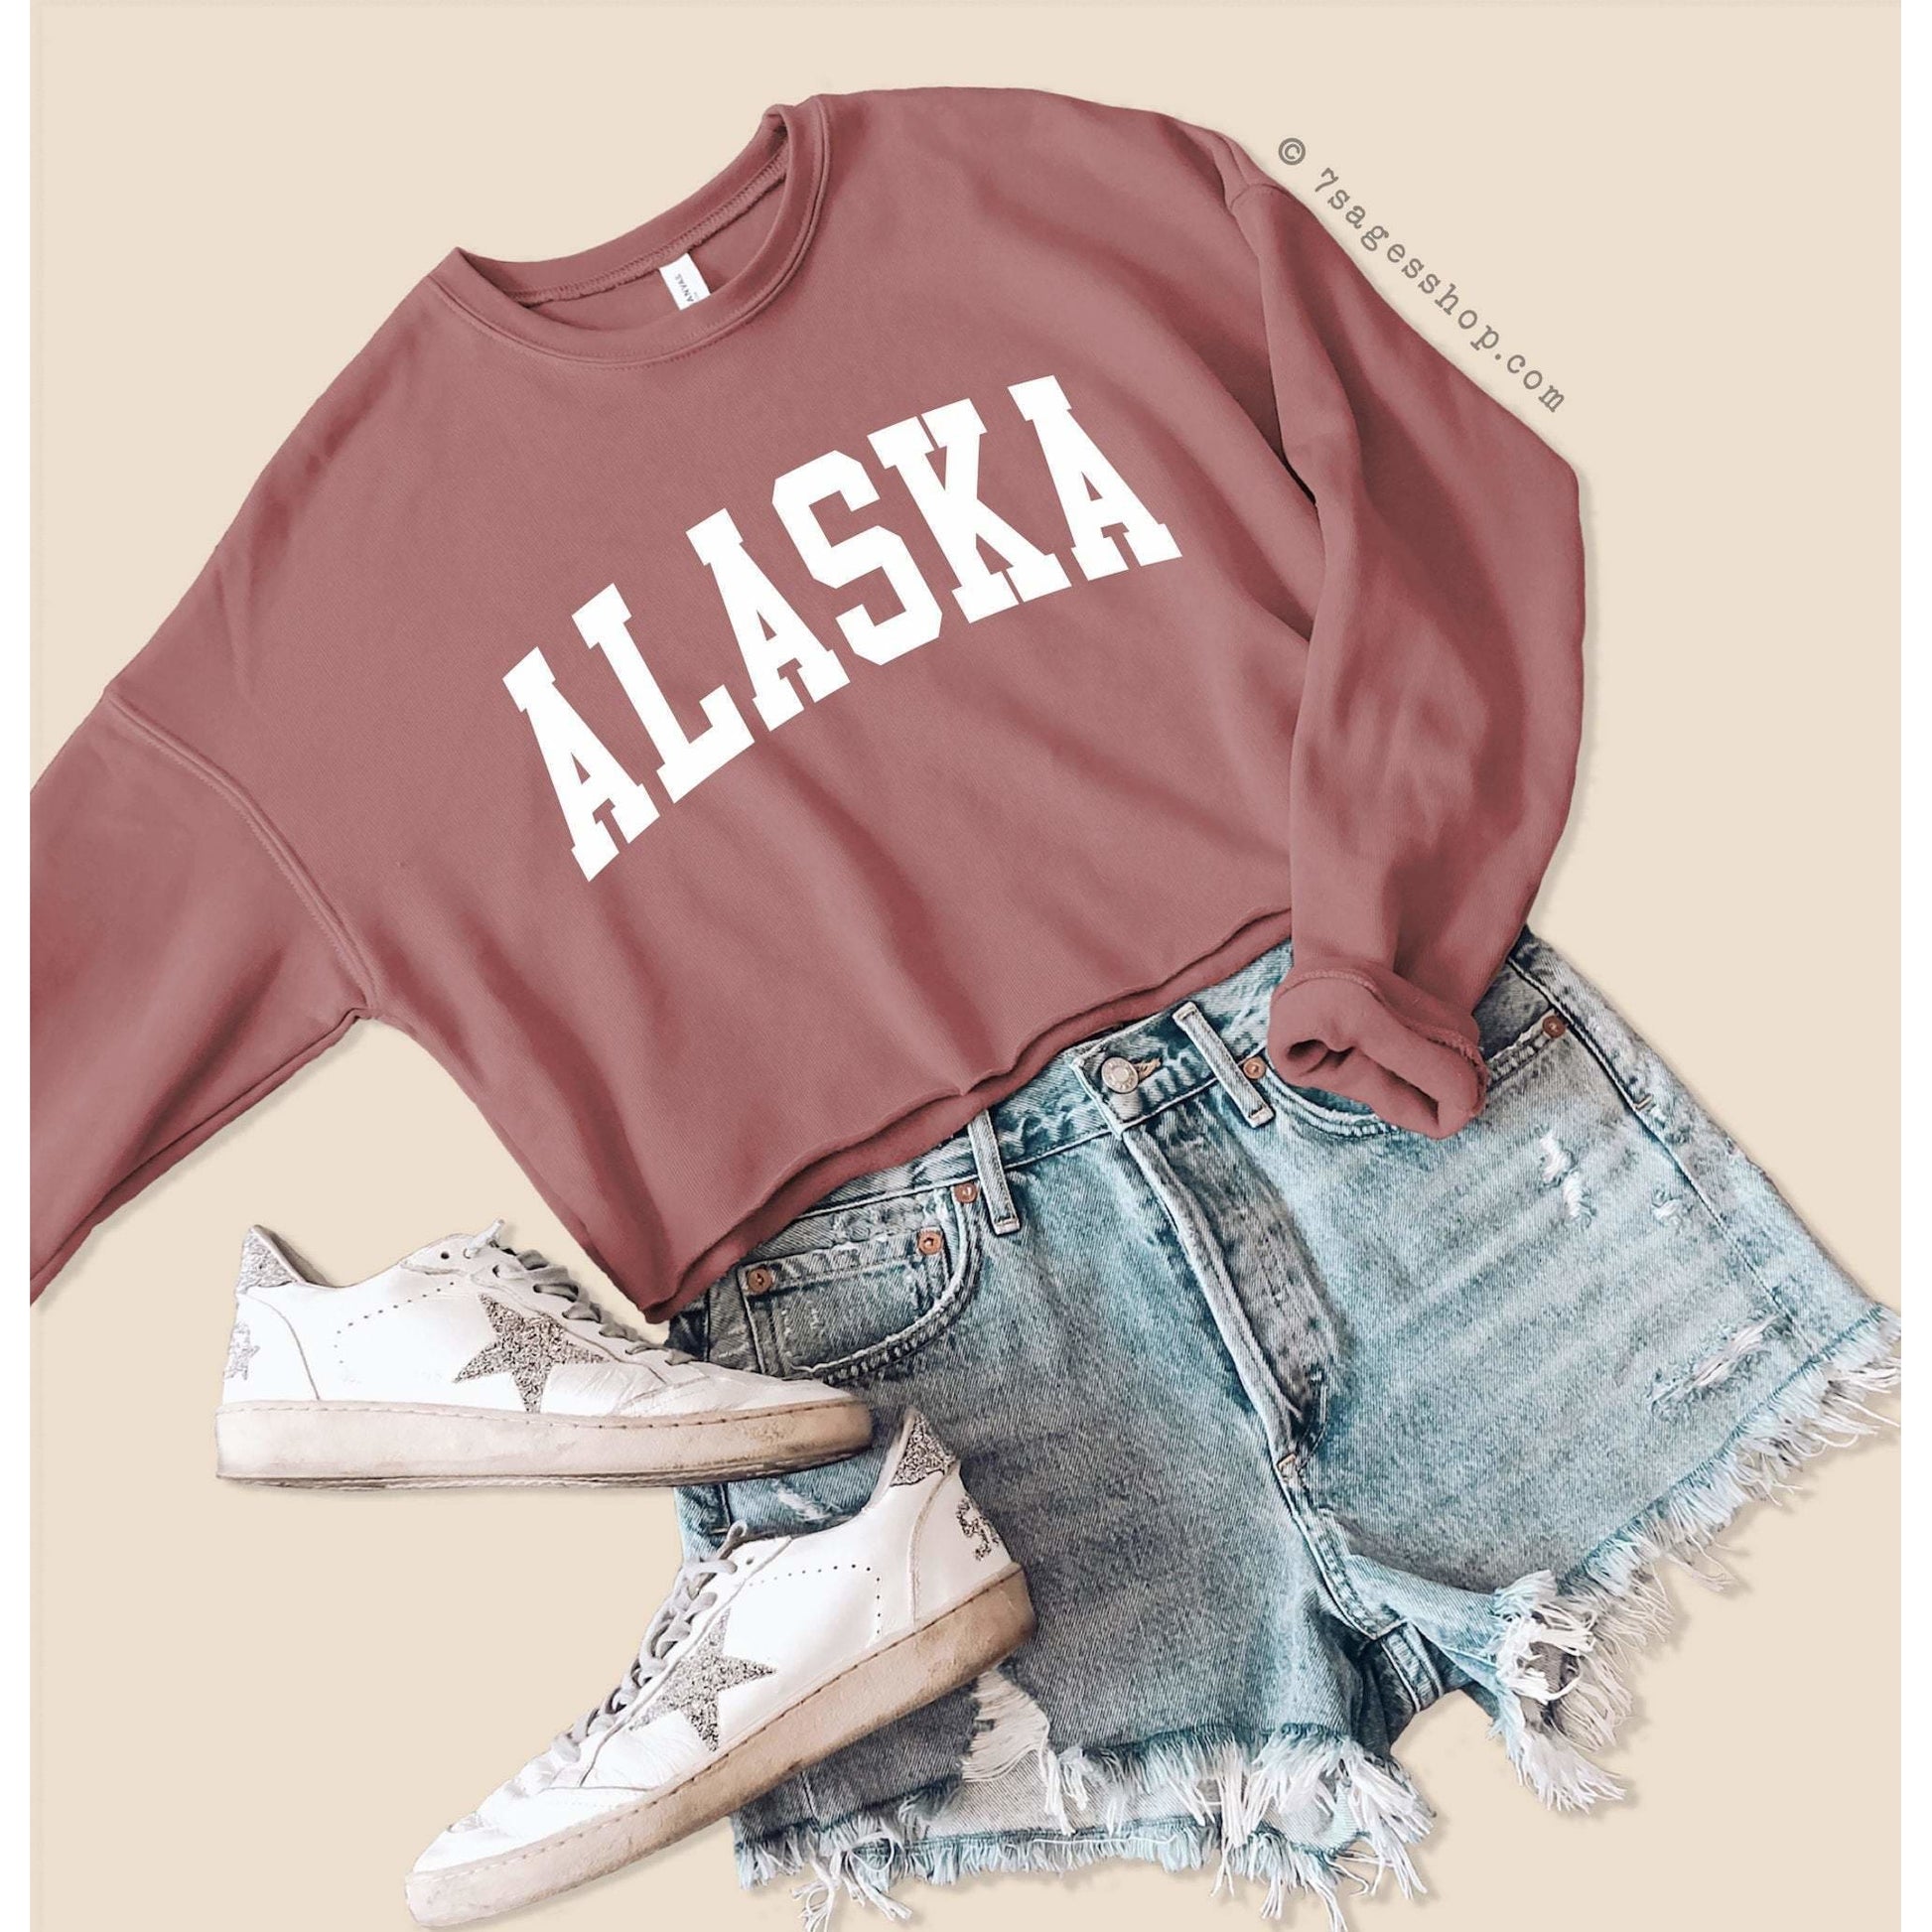 Alaska Cropped Sweatshirt - Alaska Sweatshirt - Alaska Shirts - University of Alaska Crop Top - Fleece Sweatshirt